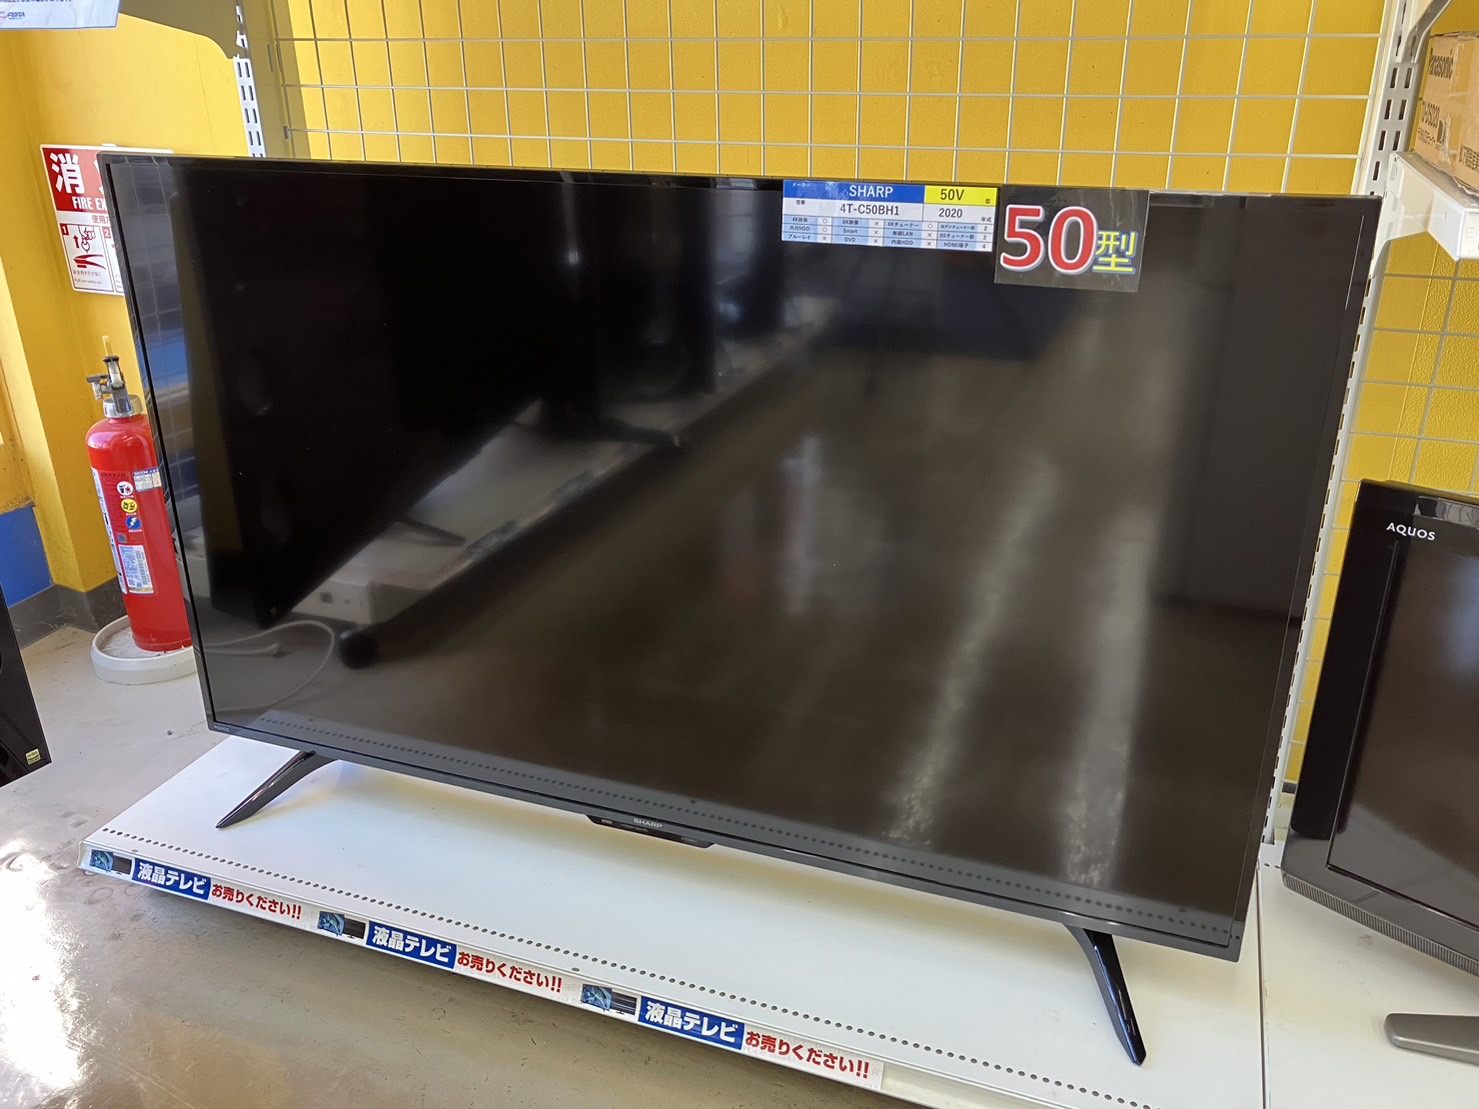 【SHARP シャープ 50型 液晶テレビ 4T-C50BH1 2020年式】を買取いたしました！ - リサイクルマートは現在冷蔵庫の買取、家具の買取強化中です！お気軽にお問い合わせください。